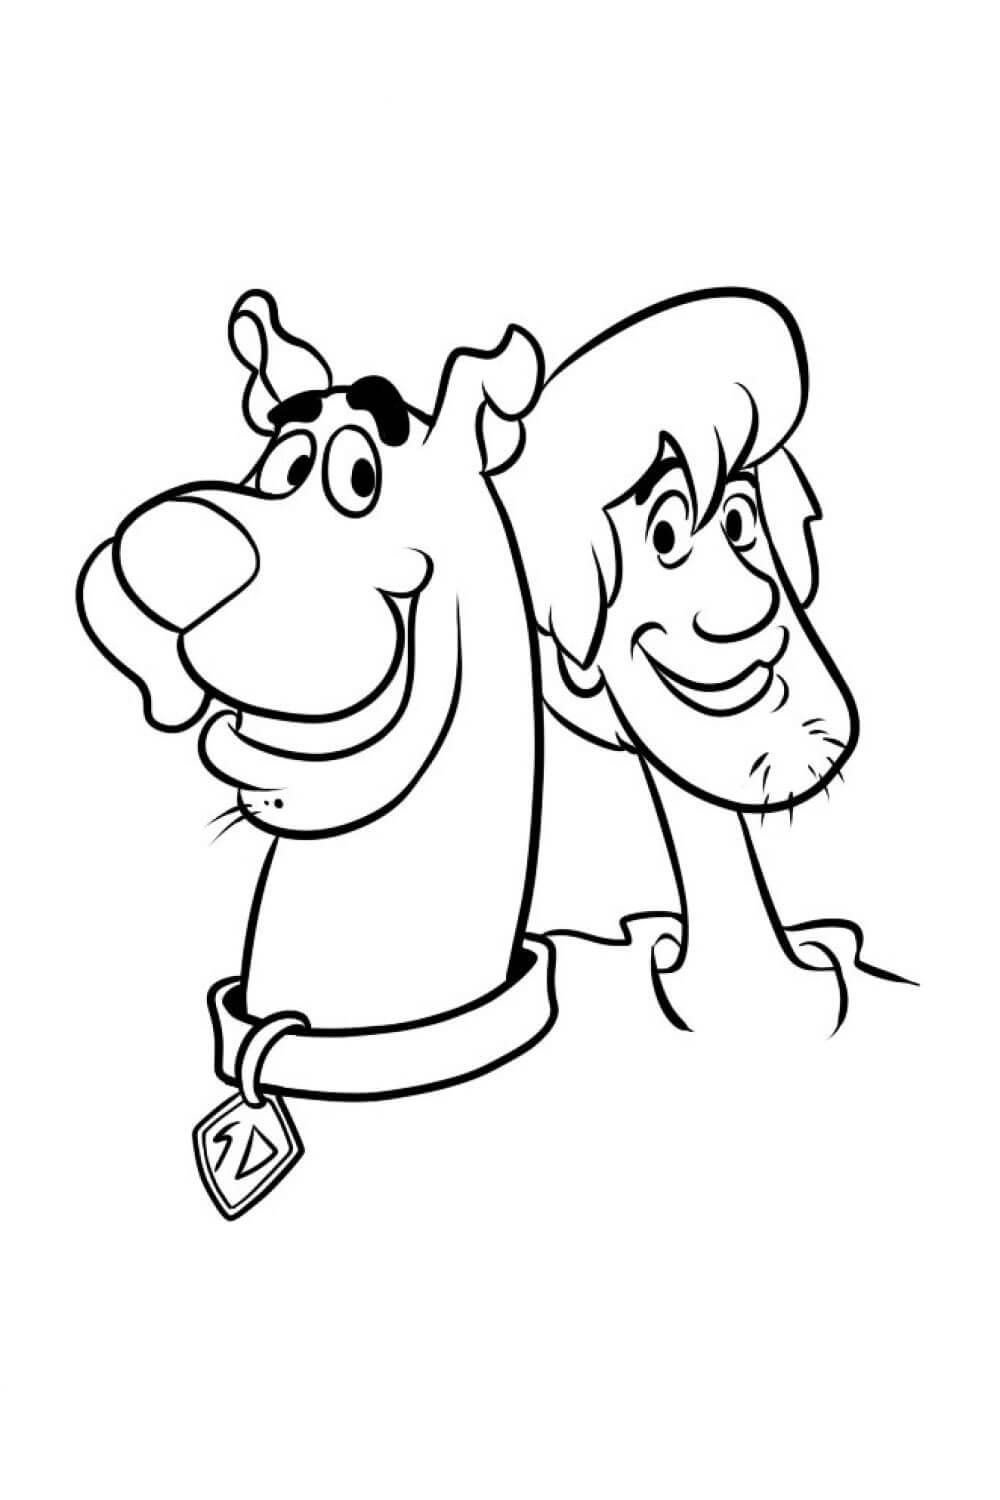 Cabeza Shaggy Rogers y Scooby Doo